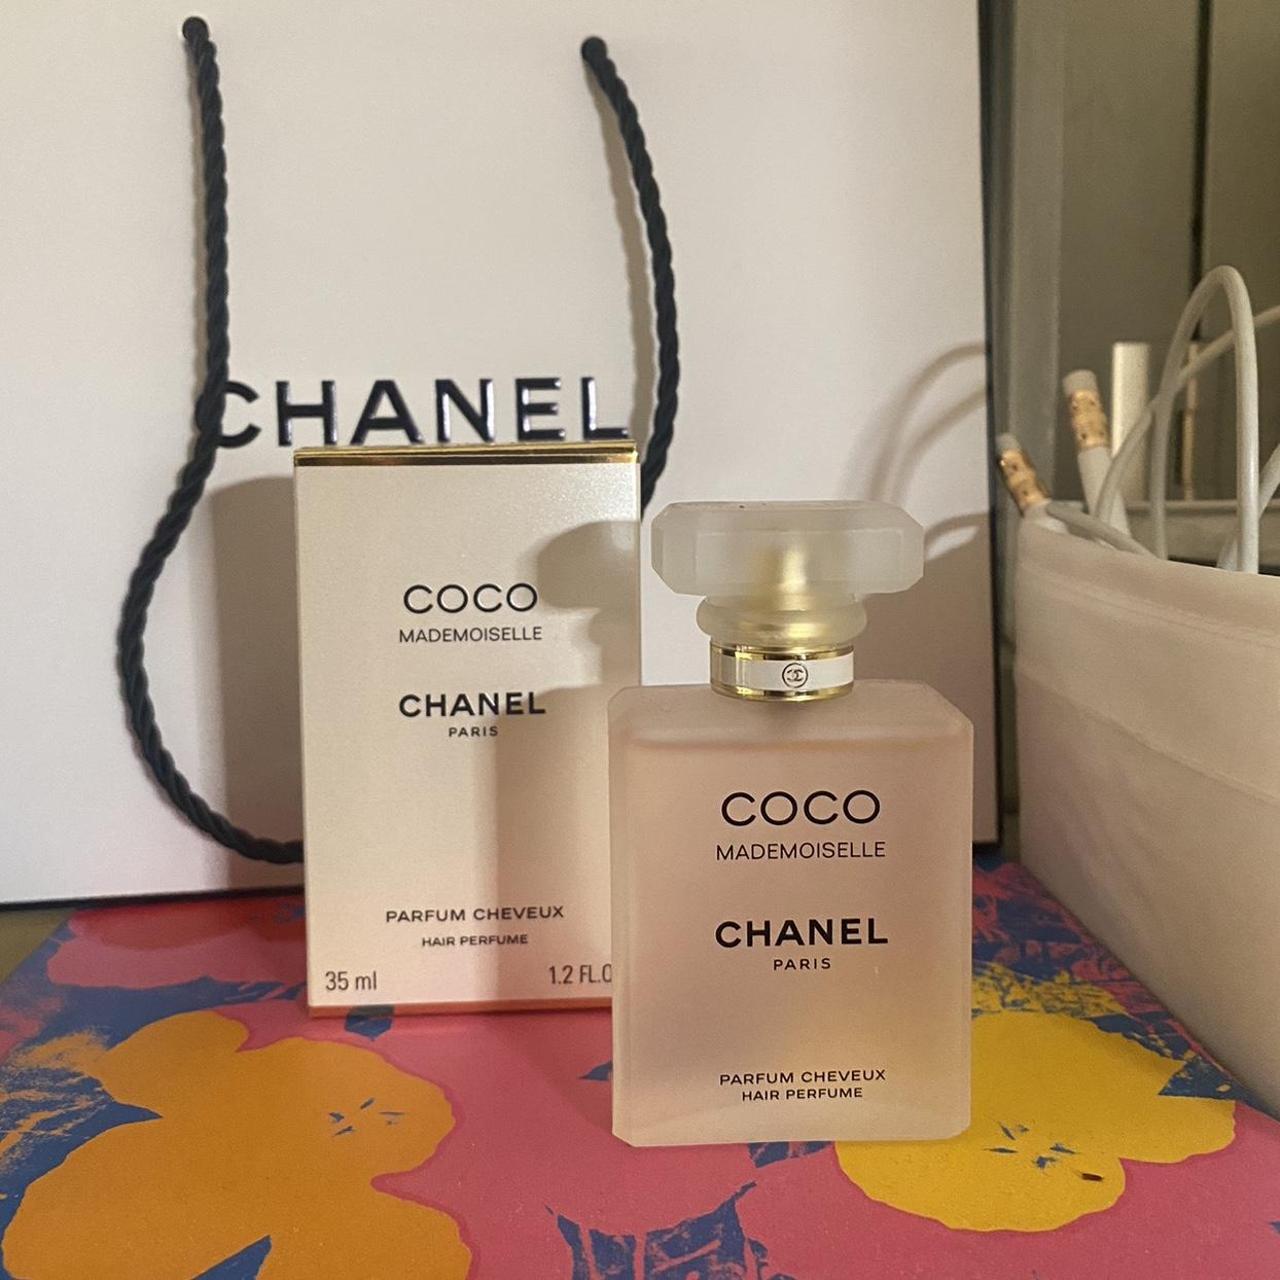 Chanel fragrance - Depop